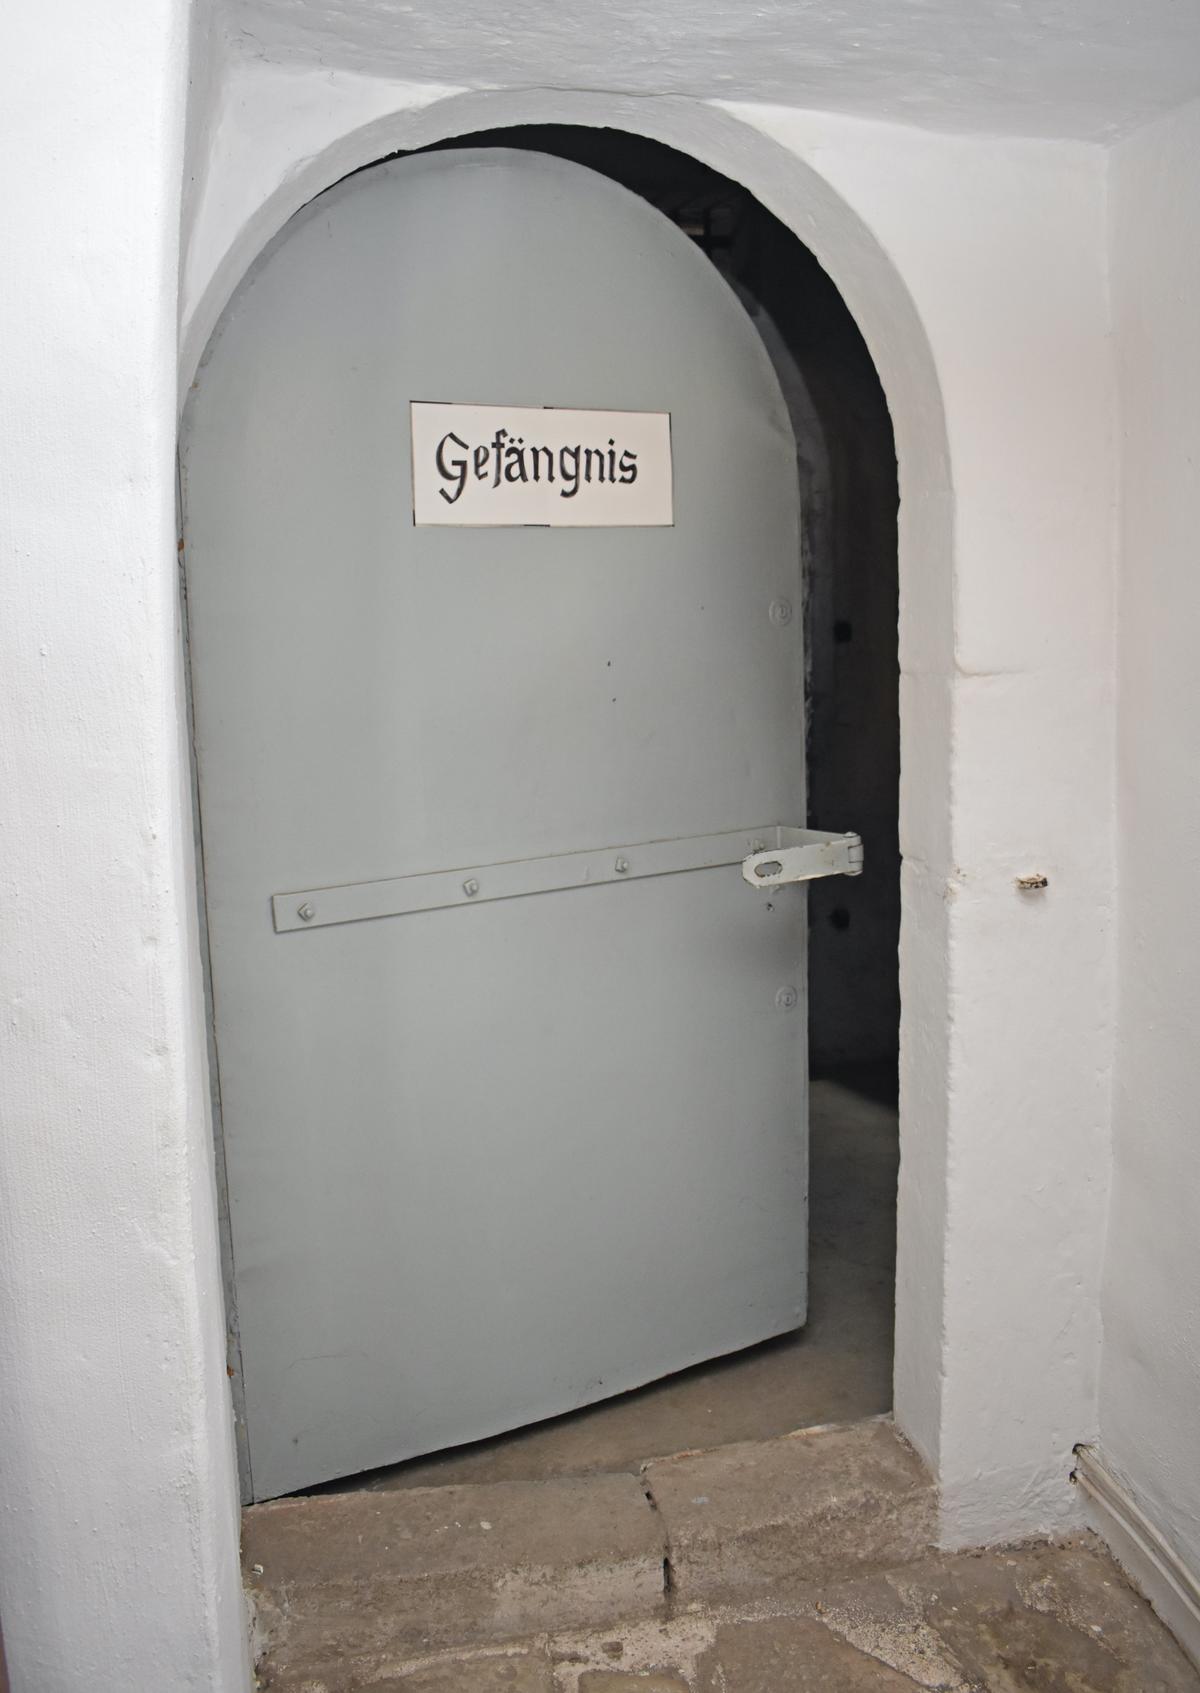 Seit mehreren Hundert Jahren geht es durch diese massive Tür ins Rathaus-Gefängnis